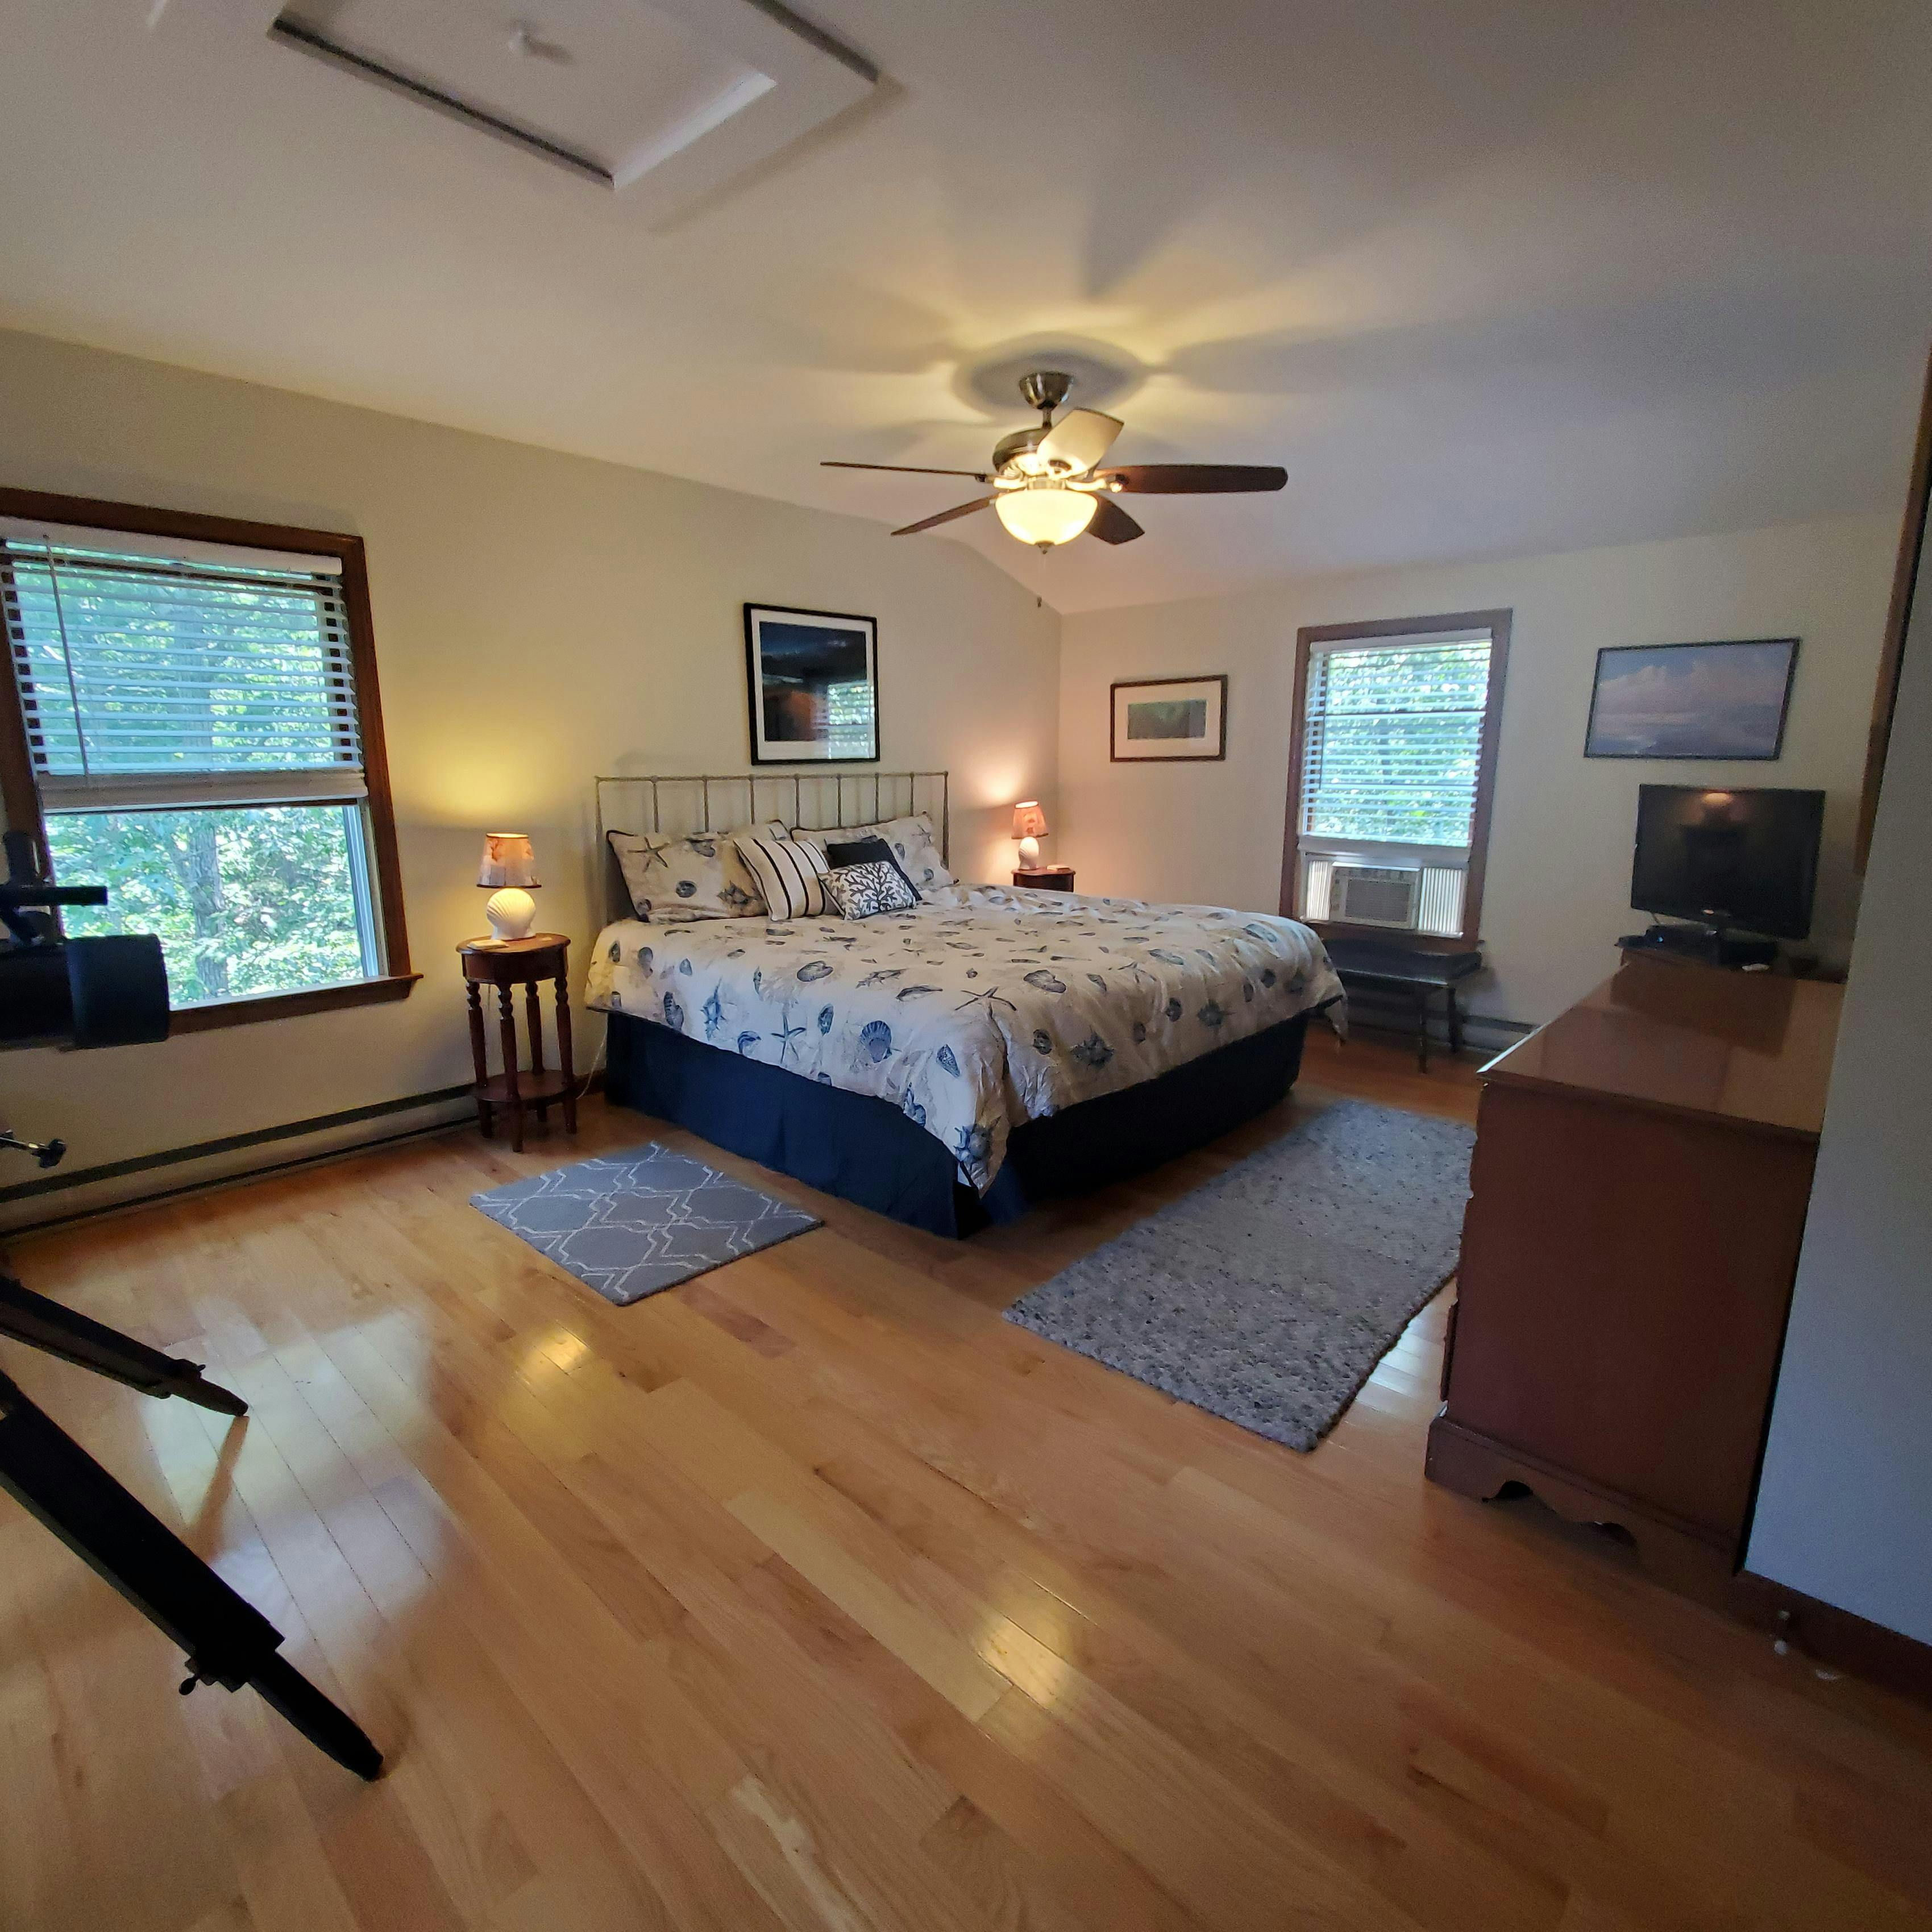 Image 2 - 4 Bedroom Rental in Oak Bluffs, East Chop - Sleeps 8